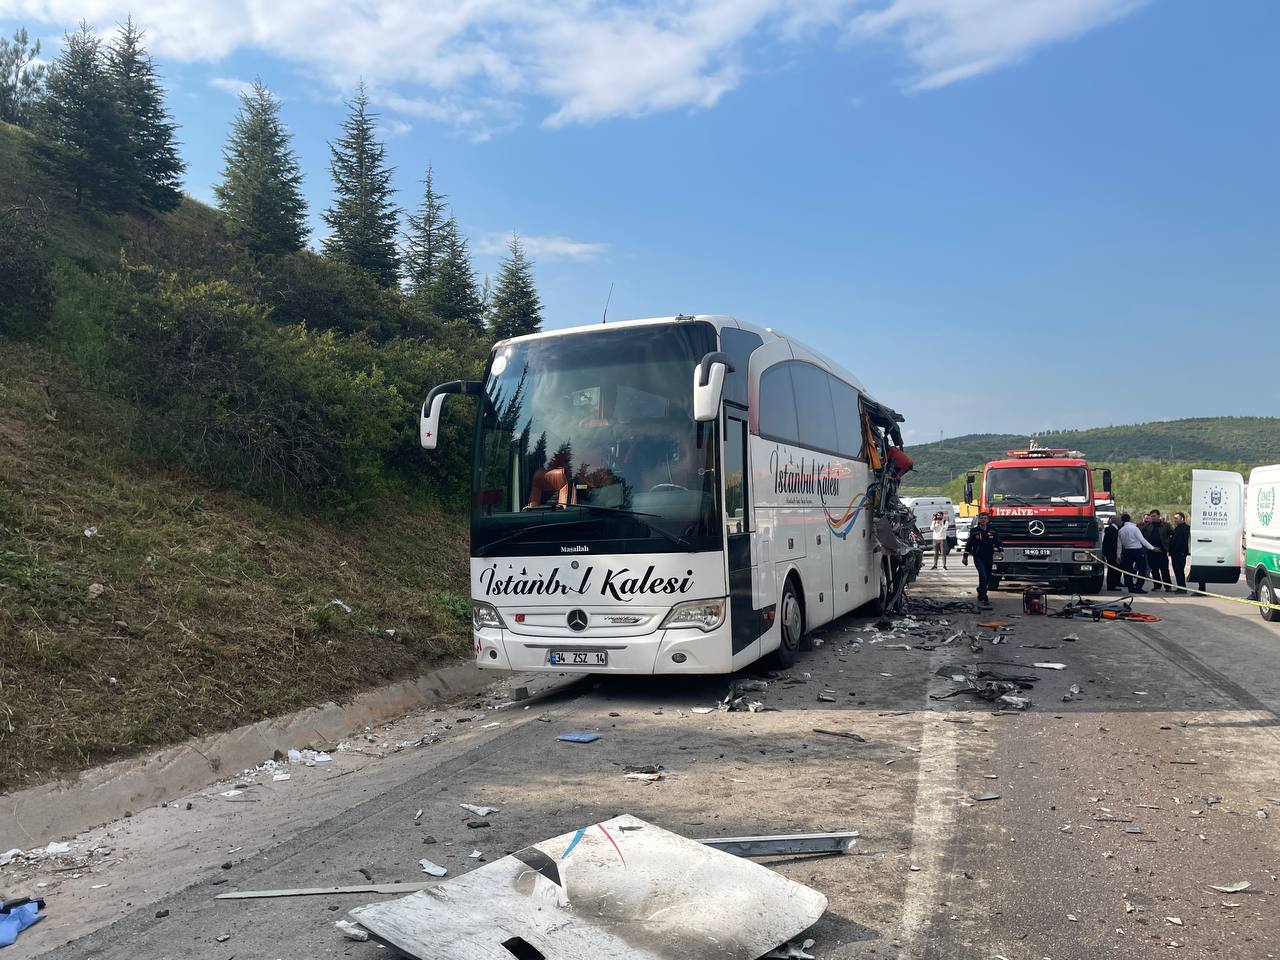 Bursa'da tır otobüse çarptı. 1 ölü 6 yaralı